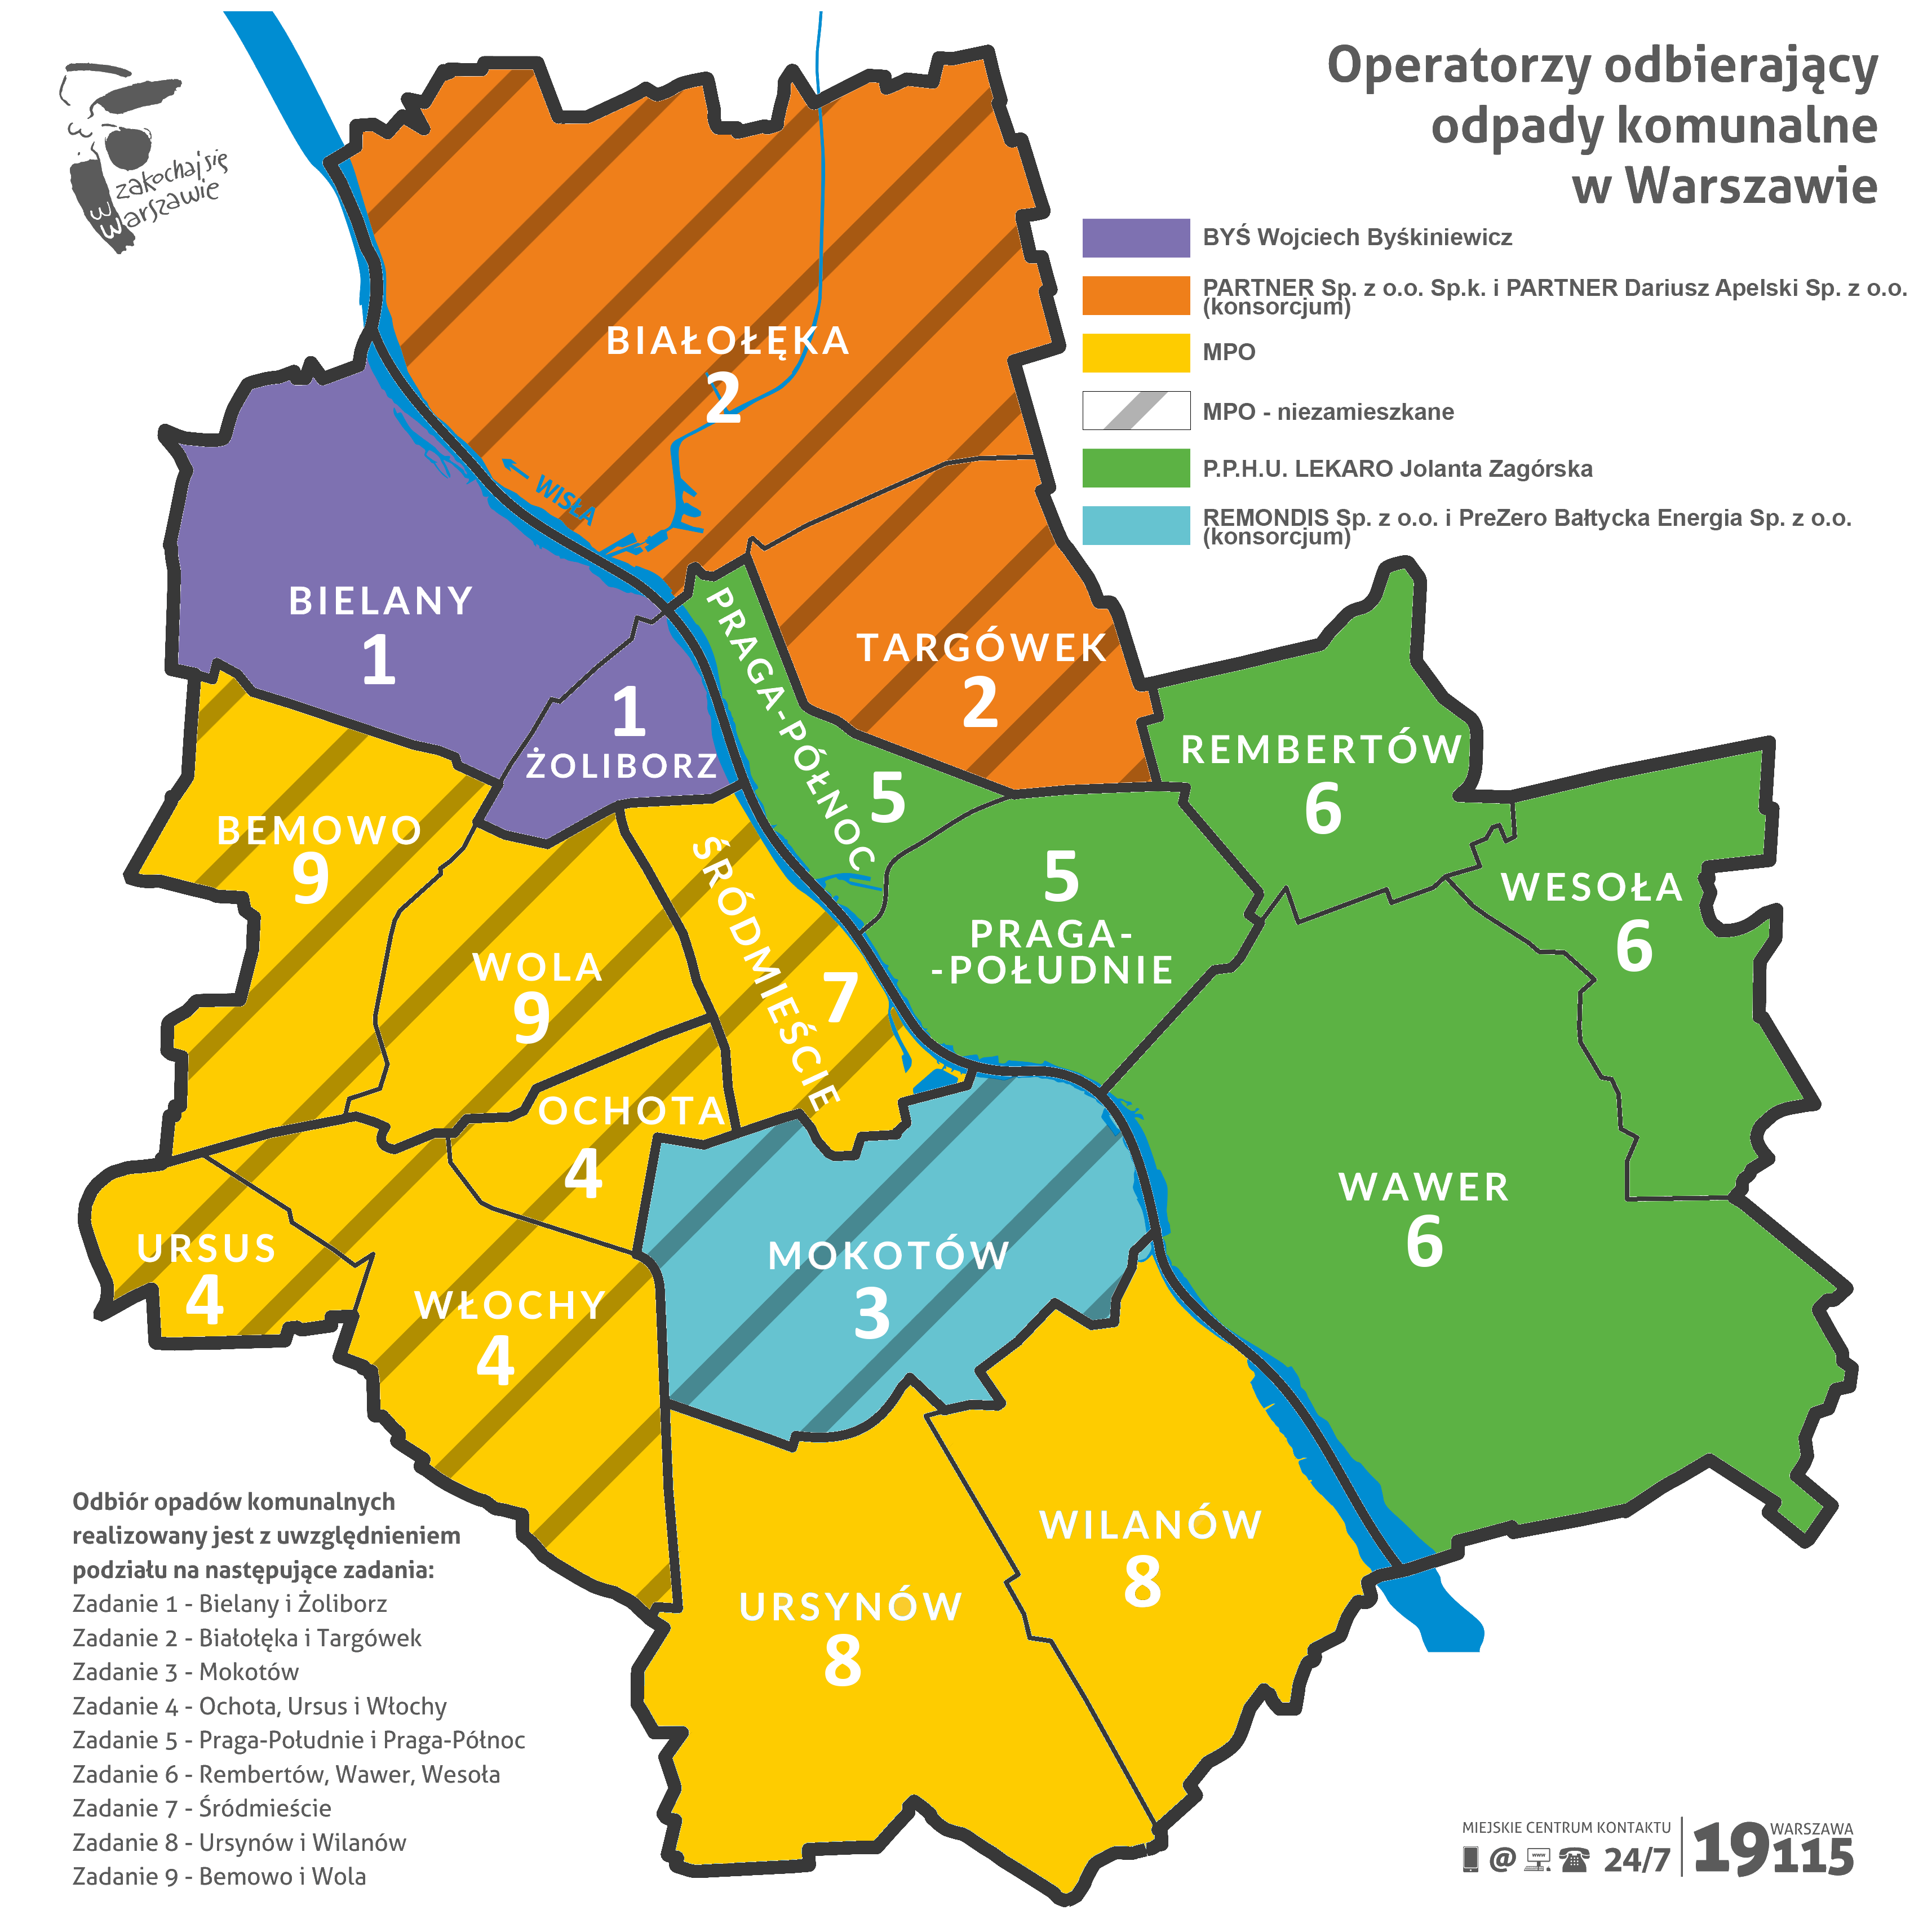 Mapa Warszawy z podziałem na operatorów w dzielnicach